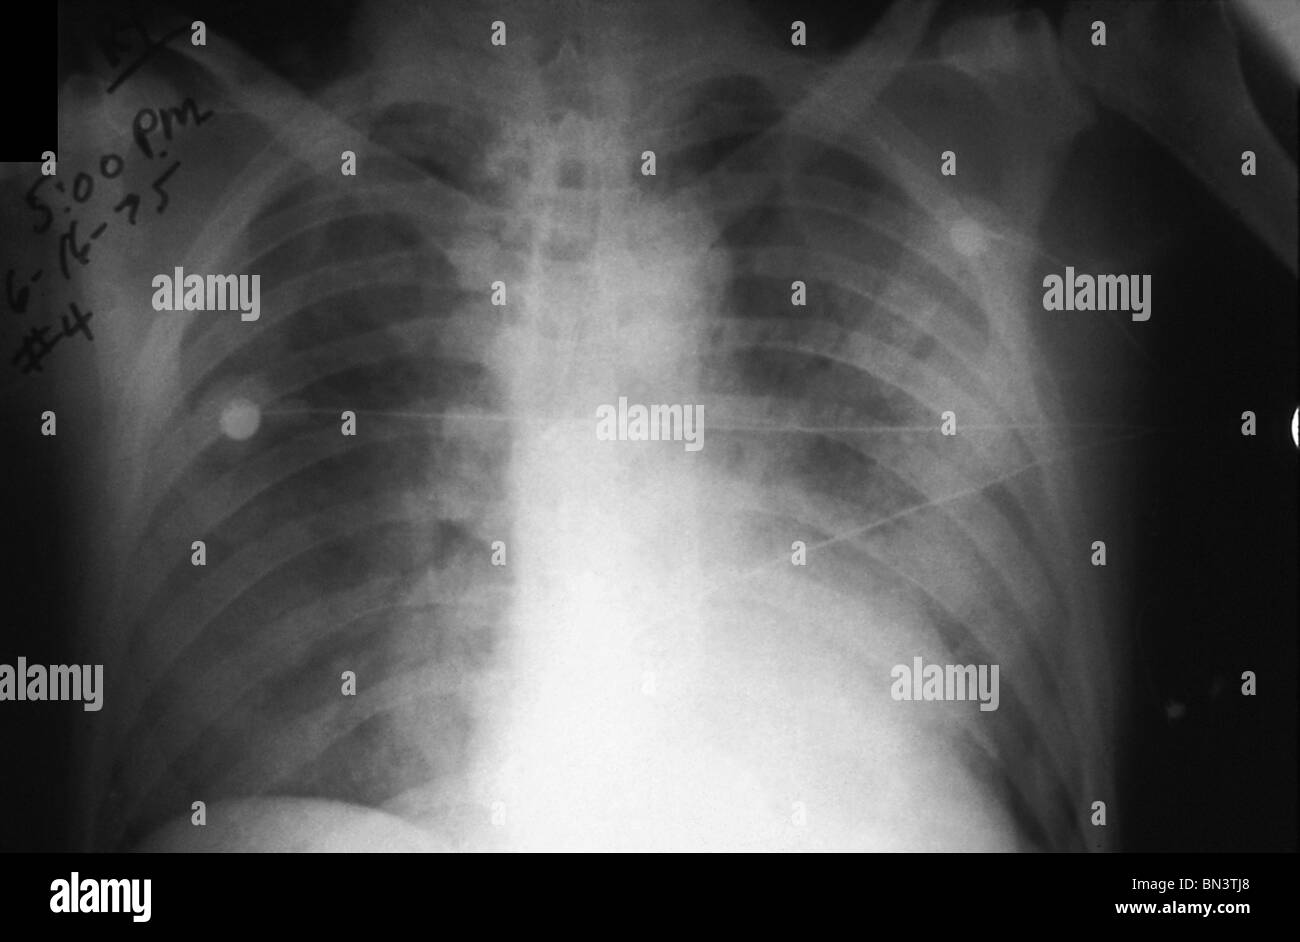 I raggi x al torace che mostra infezione da peste che coinvolgono entrambi i campi polmonari, i raggi x al torace di una persona con la peste Foto Stock